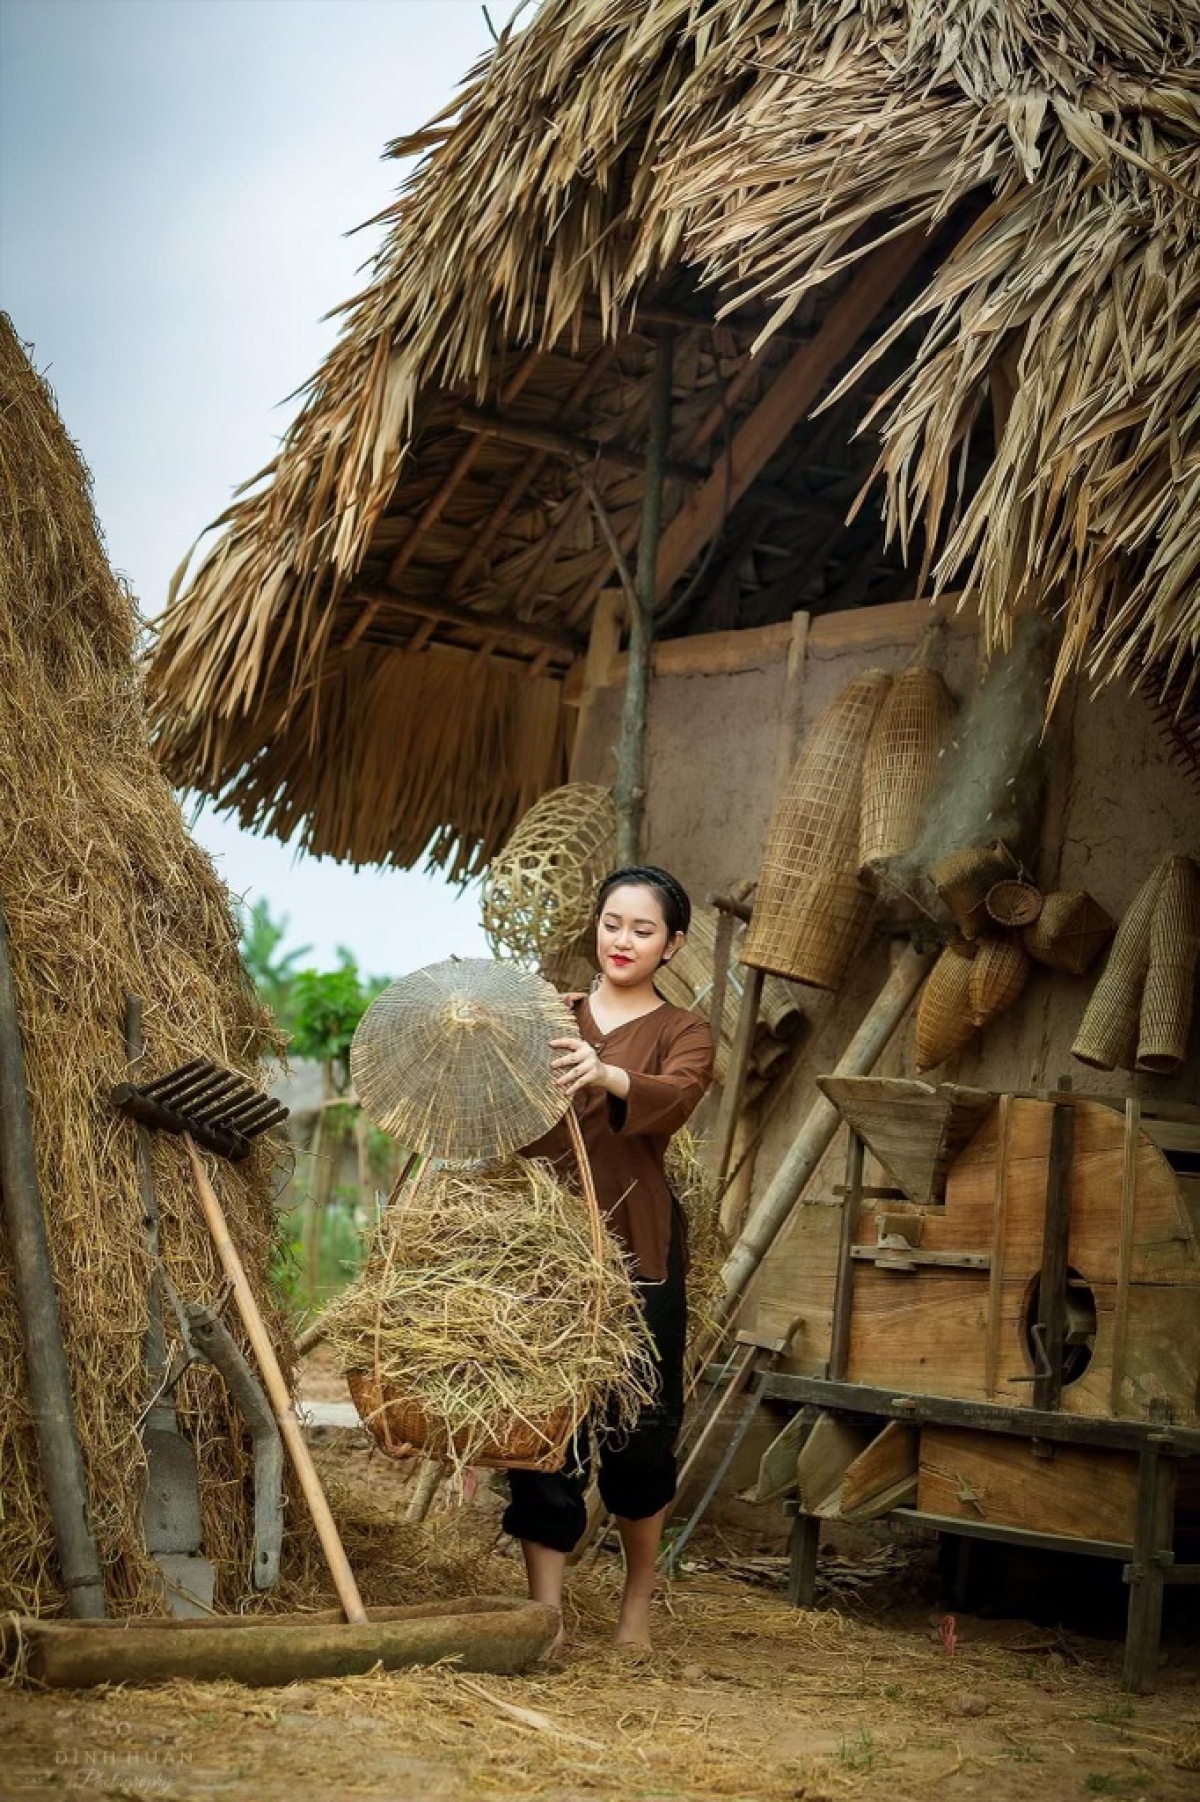 Cùng khám phá hình ảnh làng quê Việt Nam, bạn sẽ thấy sự bền vững của nền văn hóa dân tộc thông qua nghề trồng trọt, nuôi tôm, chăn nuôi, làm đồ thủ công và tham gia vào nhiều hoạt động vui chơi giải trí đầy màu sắc.